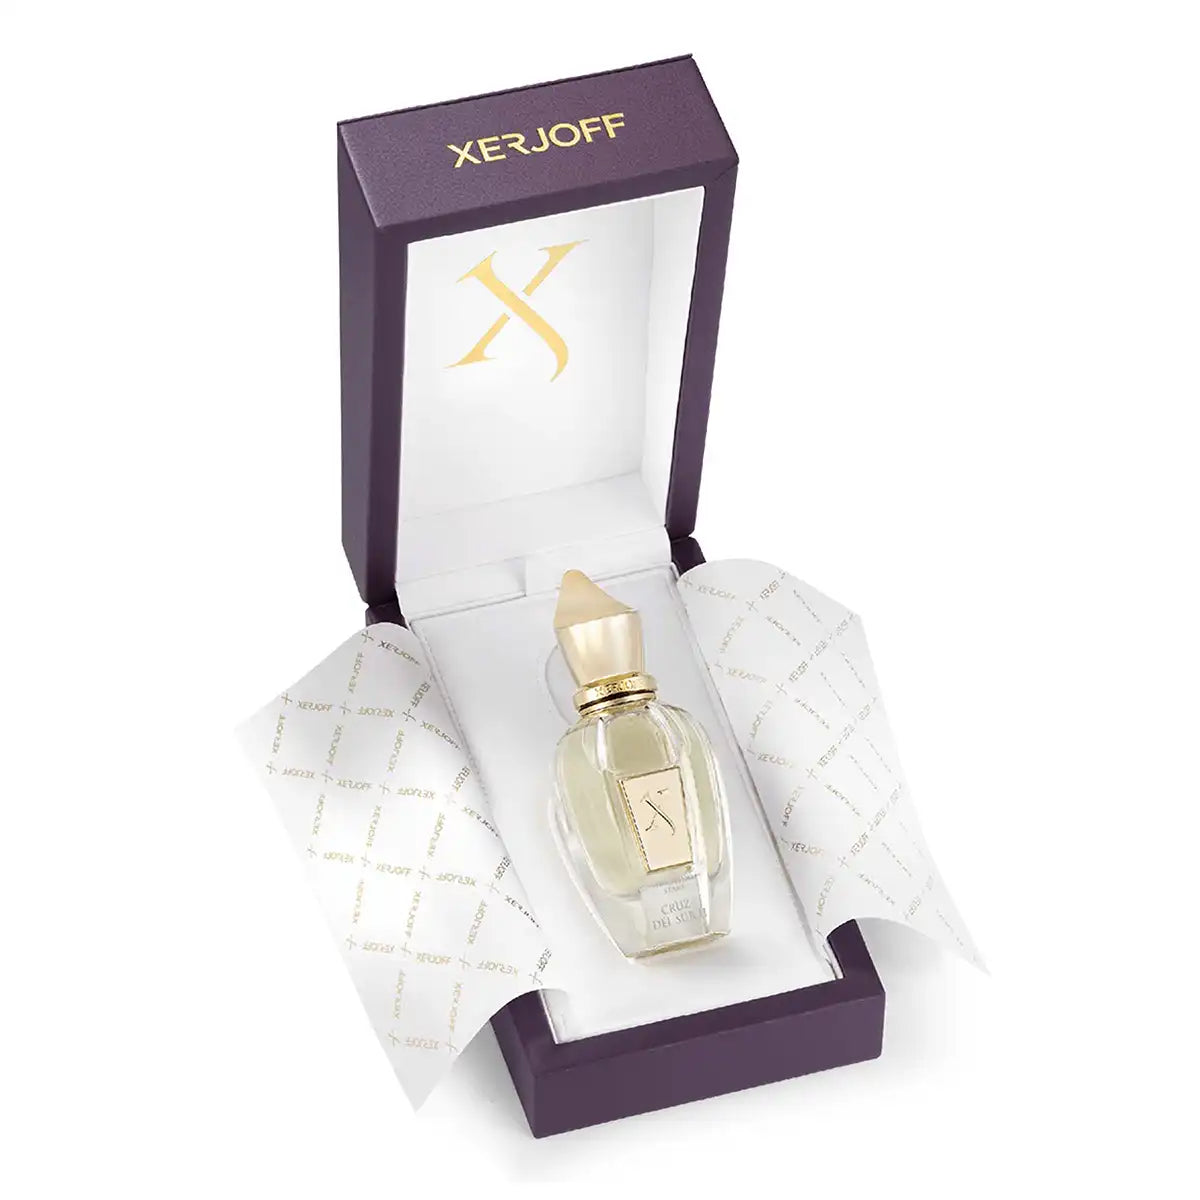 Xerjoff Cruz Del Sur II Parfum 50ml